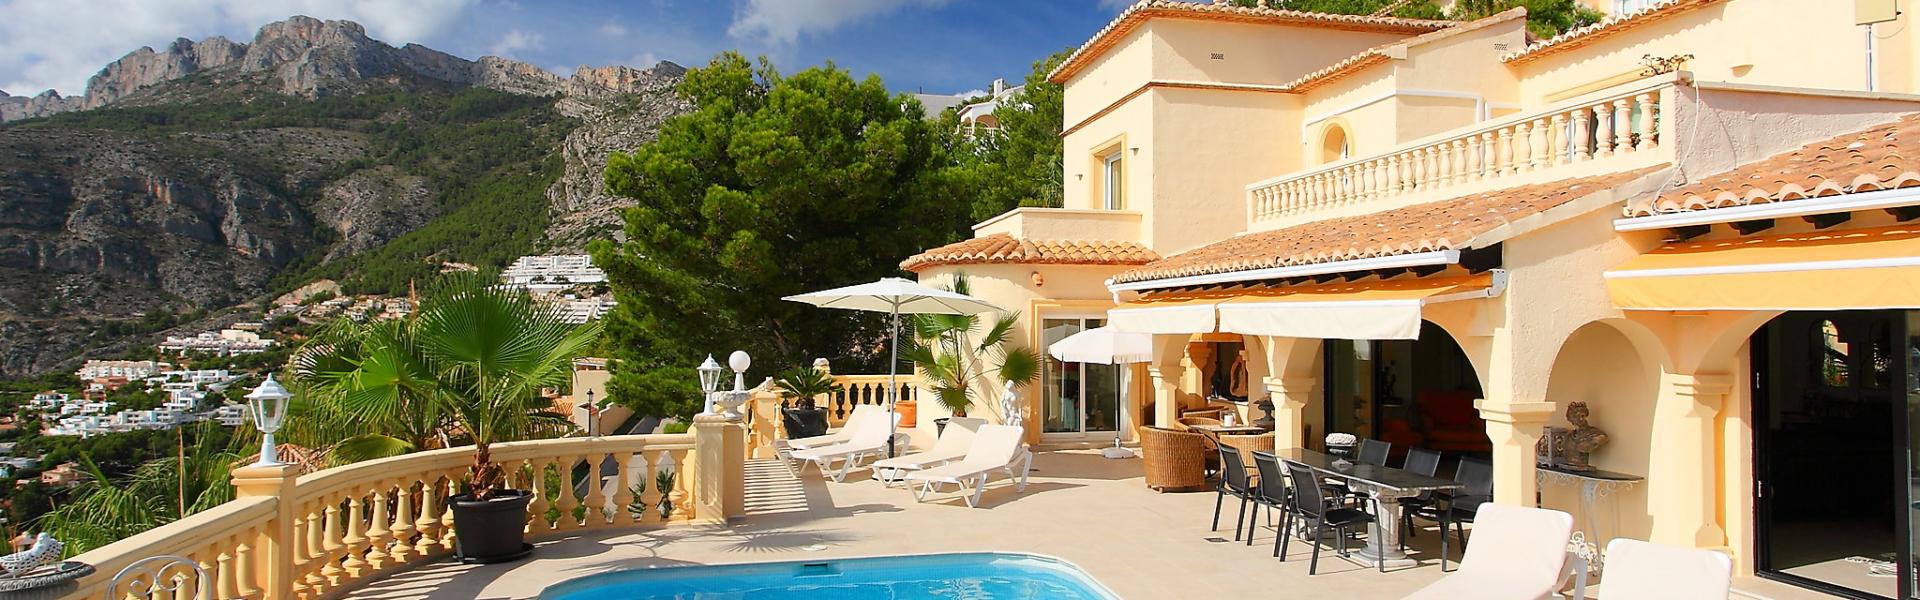 Ferienhaus mit Pool an der Côte d'Azur - HomeToGo